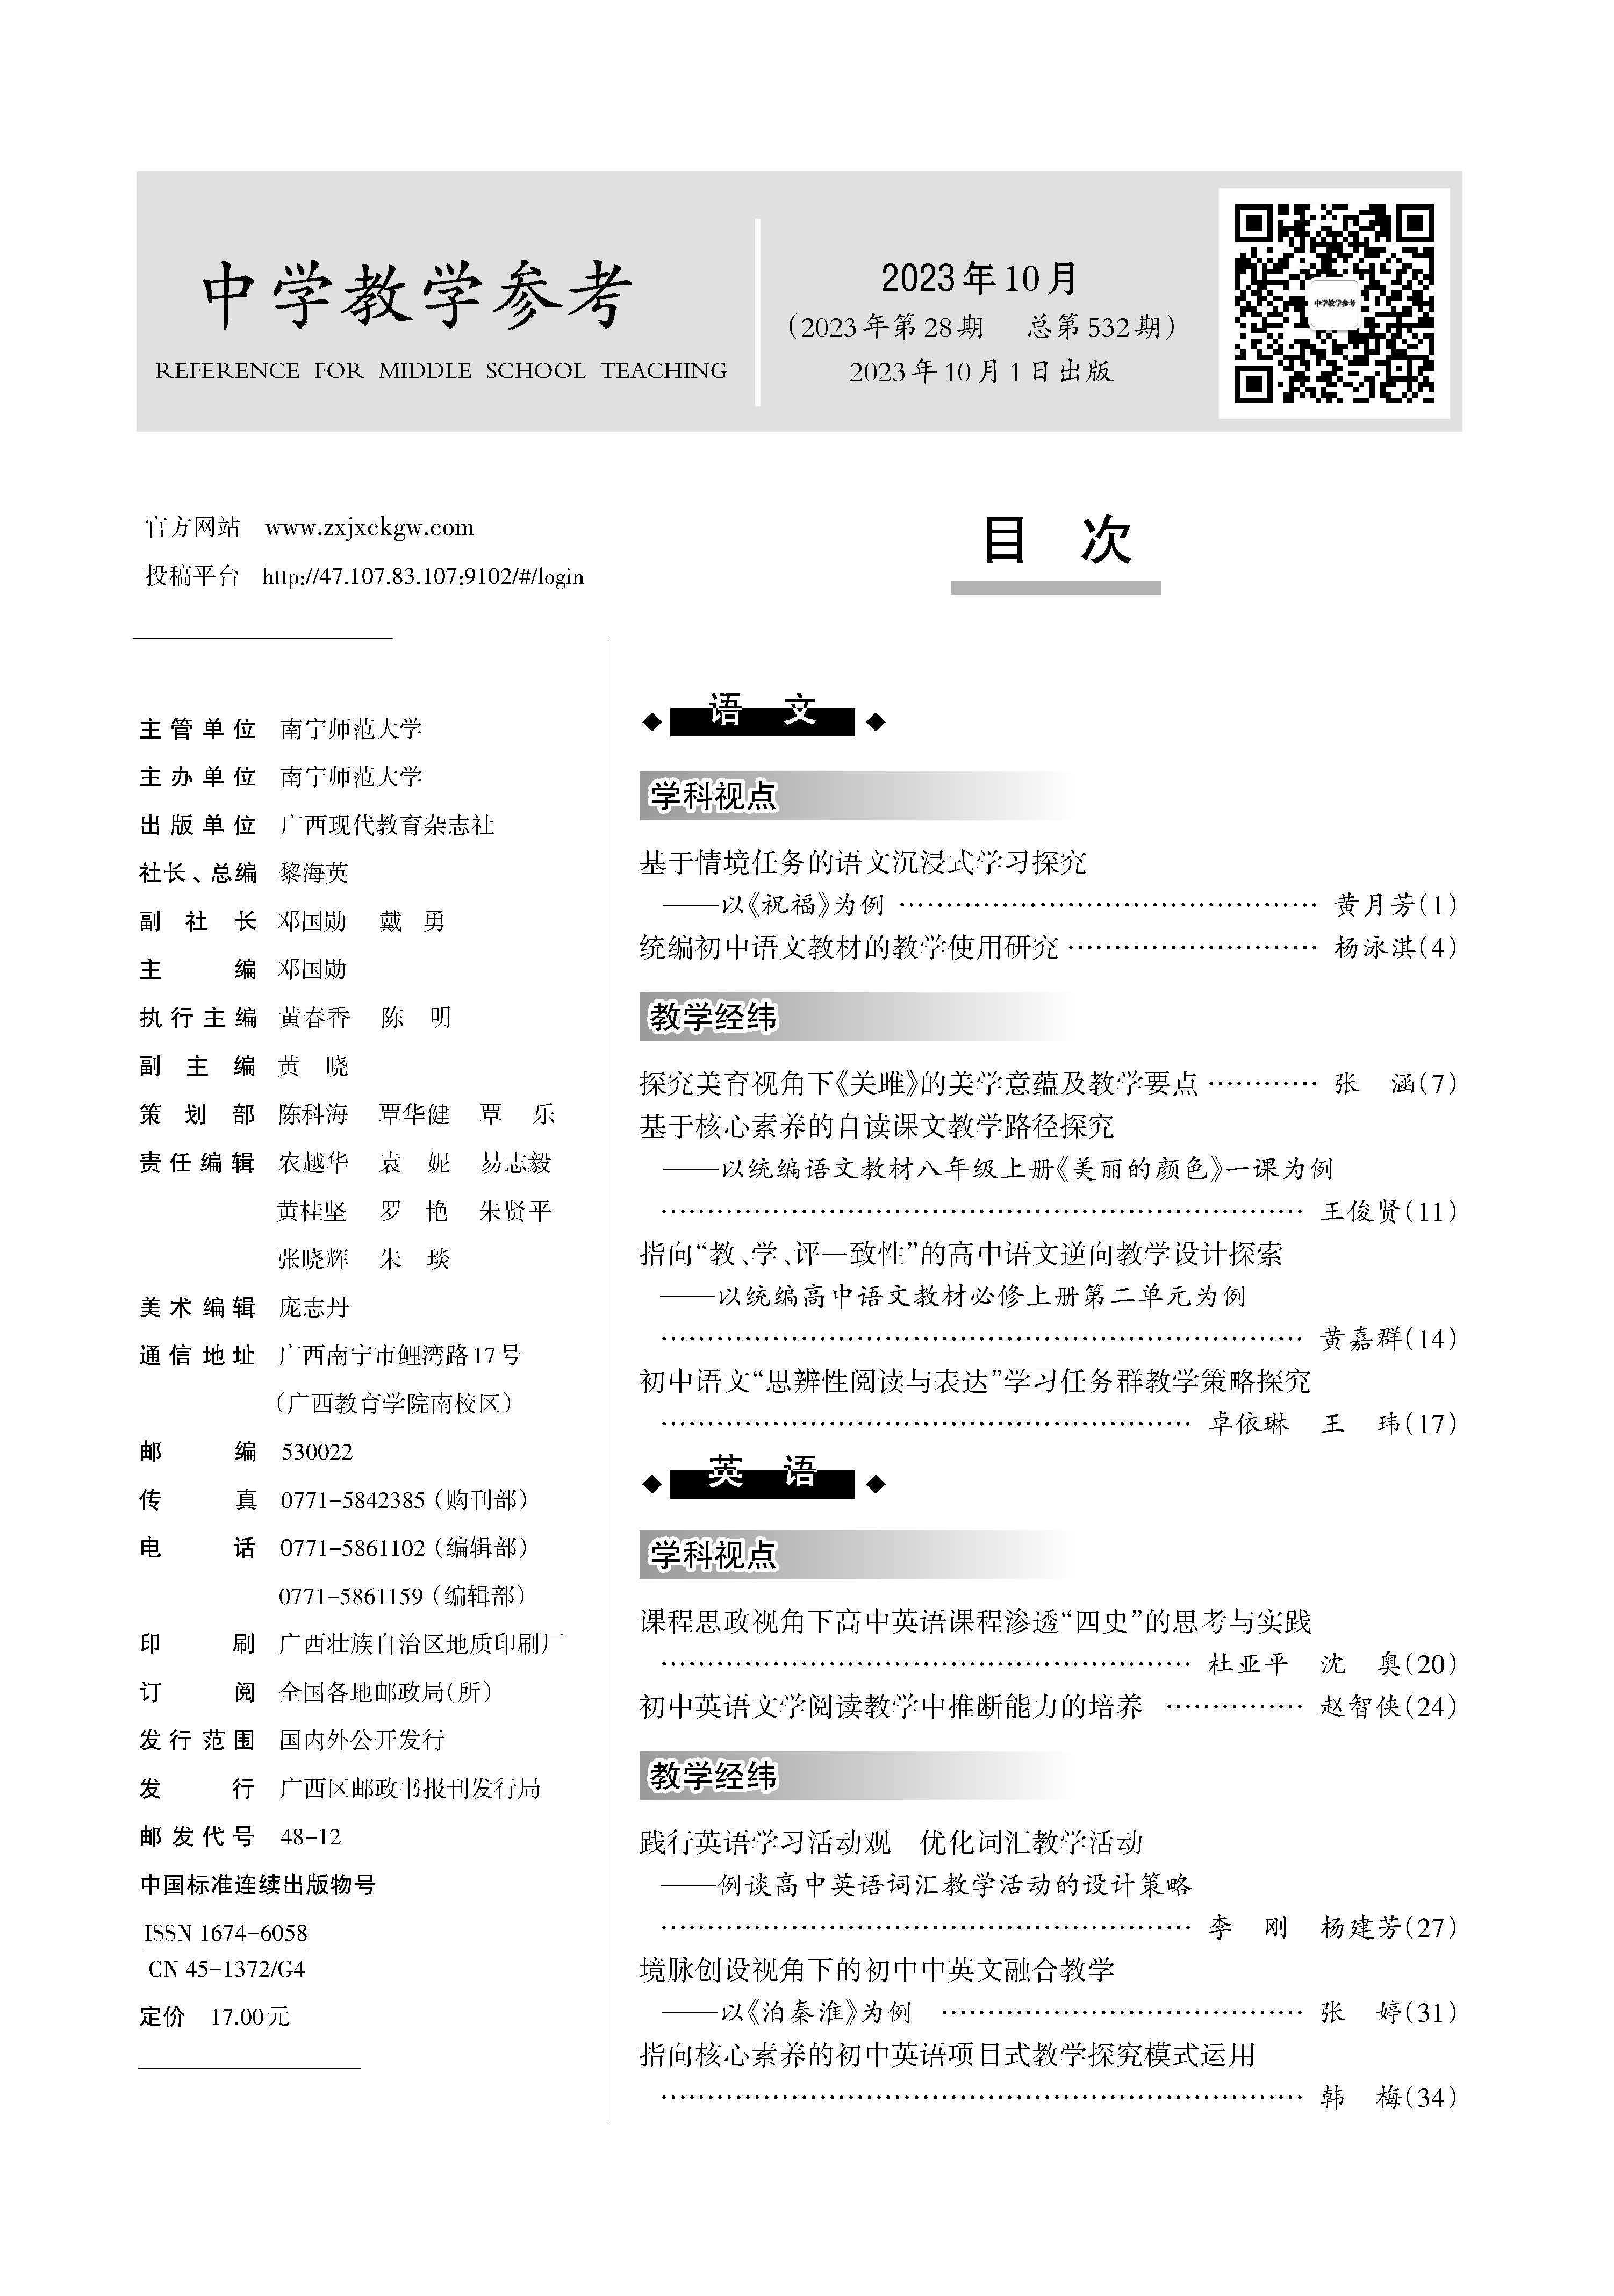 2中学教学参考第10期（上旬）_Print(4)_页面_001.jpg